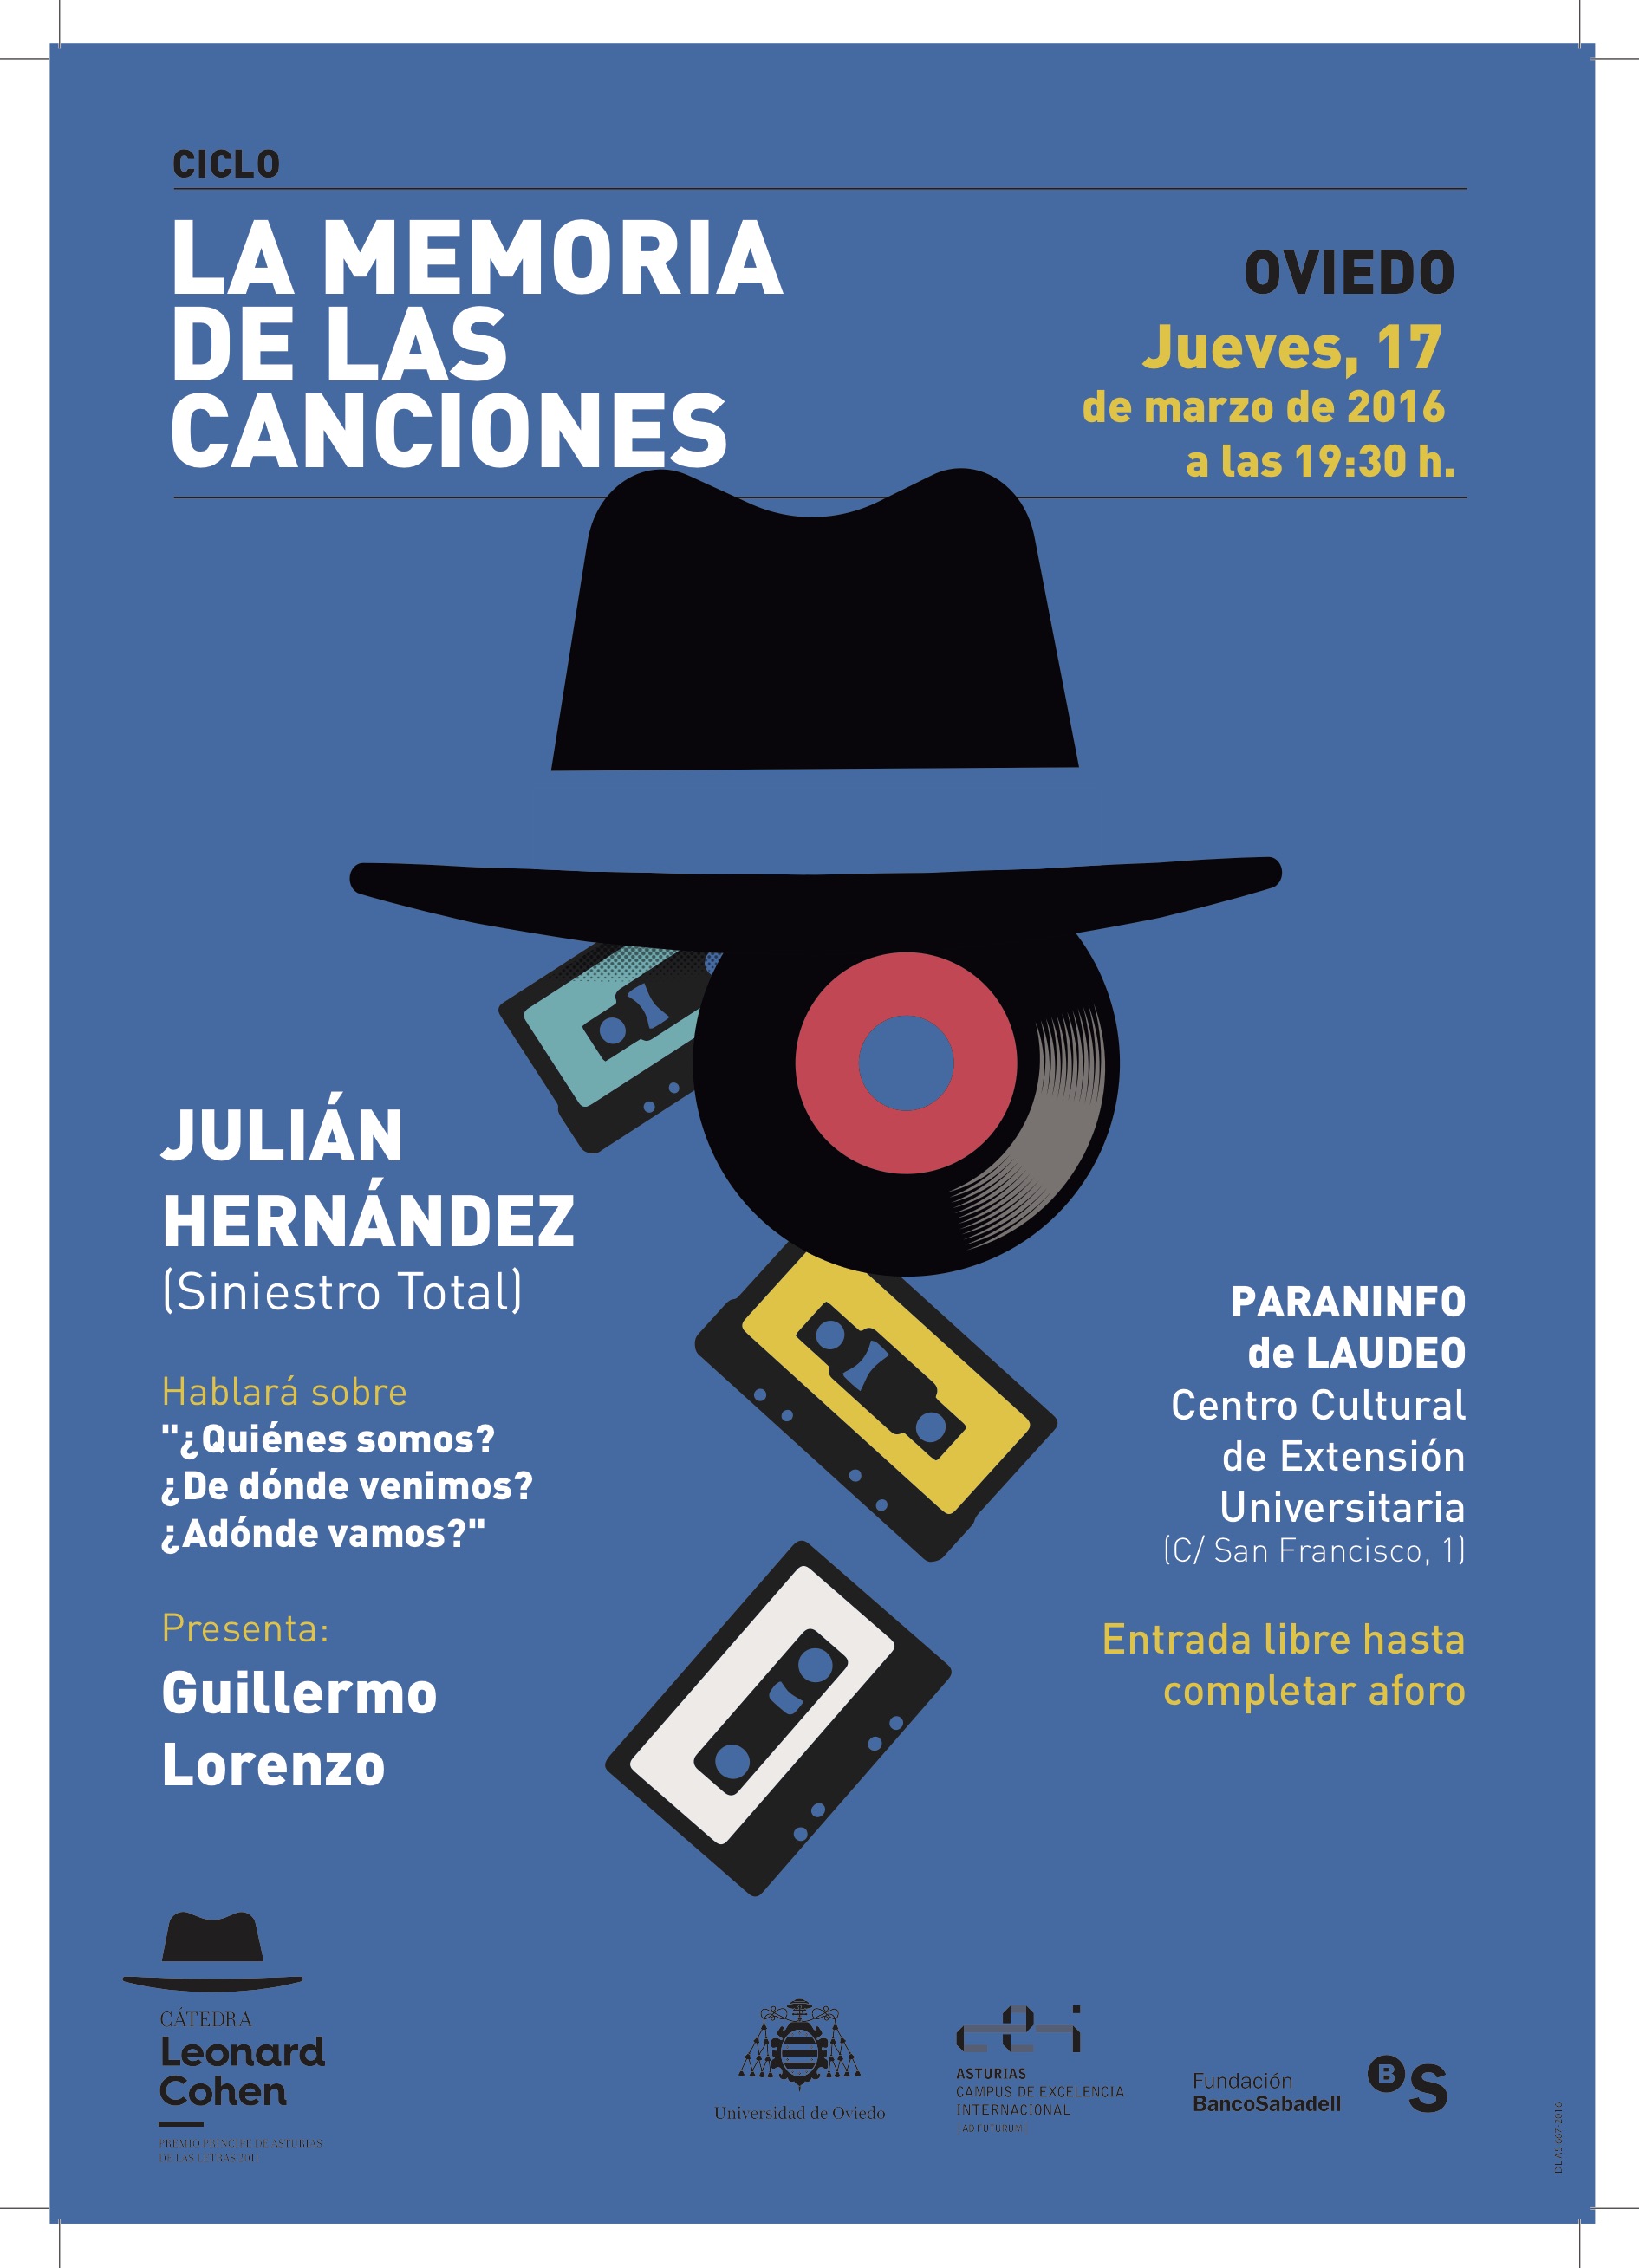 La memoria de las canciones: Julián Hernández